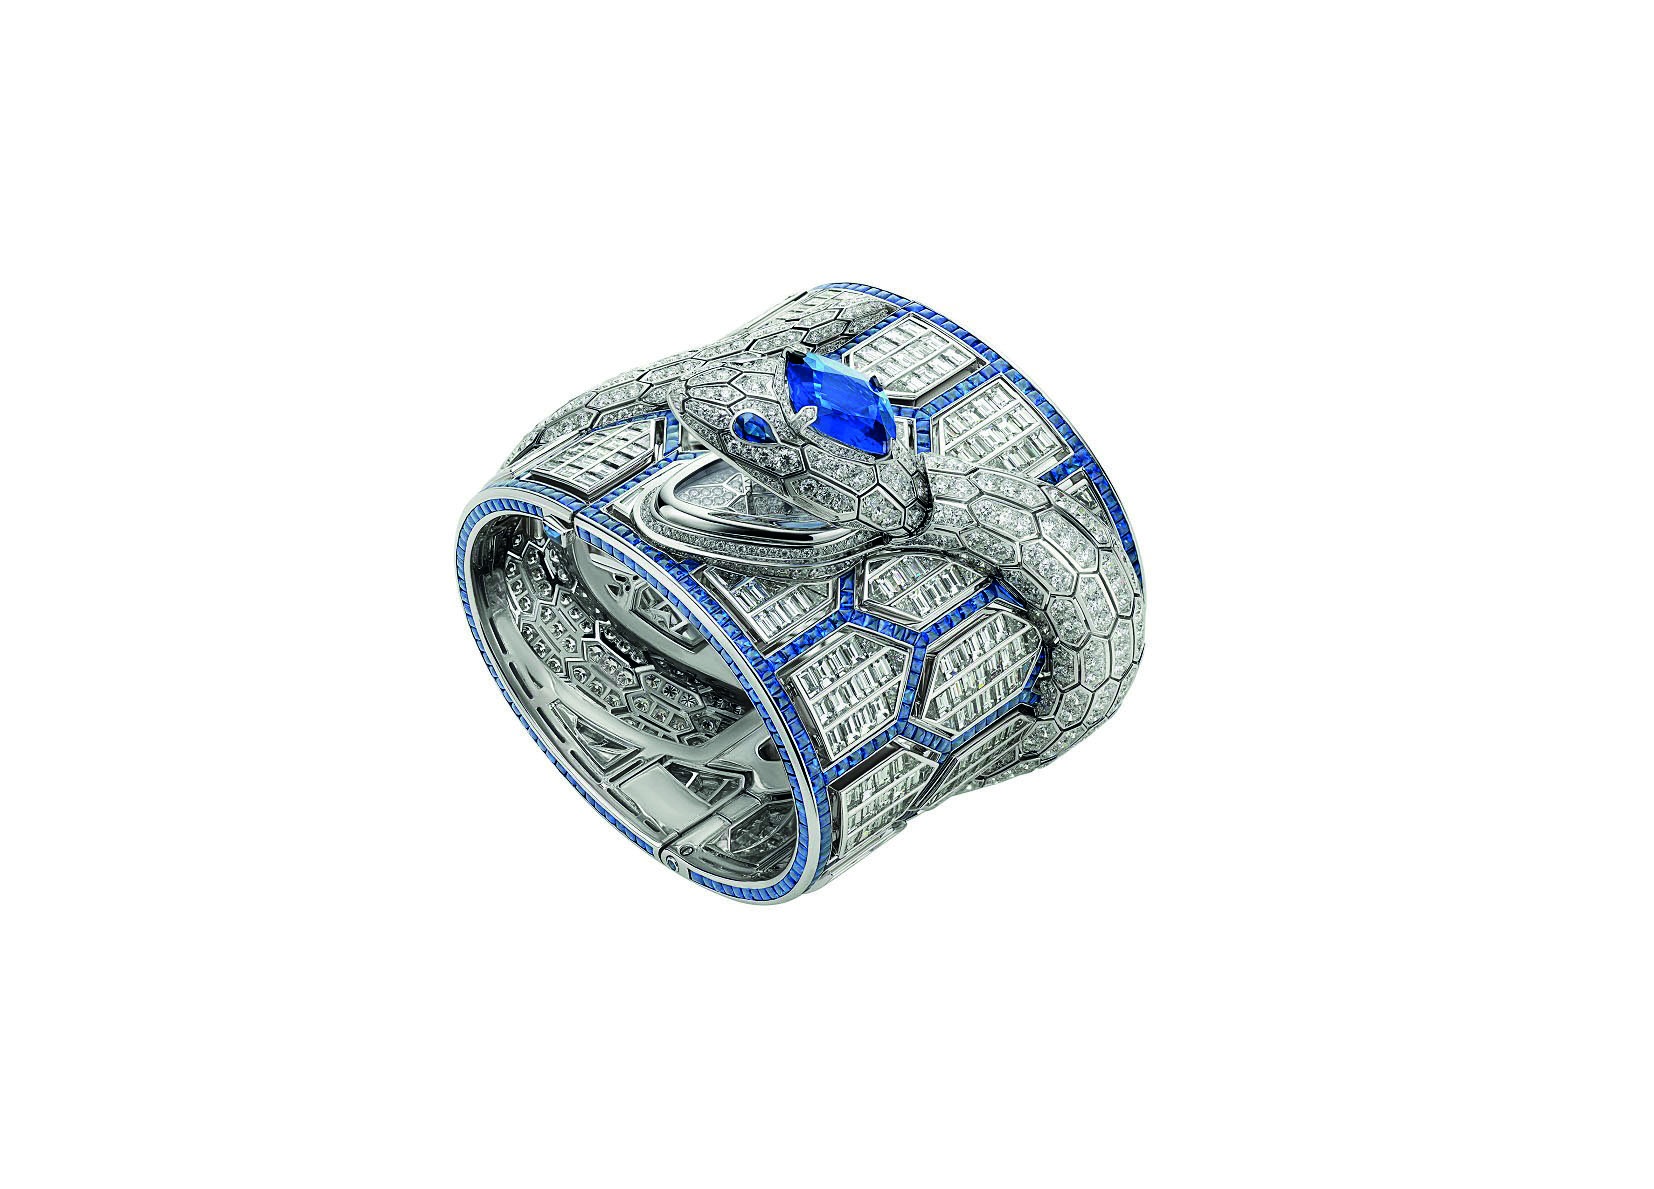 2019 年奪得 GPHG 最佳珠寶腕錶的「Serpenti Misteriosi Romani 頂級珠寶神秘腕錶」外型是品牌標誌的靈蛇，由蛇首一顆 10.83 克拉的斯里蘭卡藍寶石、總重 60 克拉美鑽和 30 克拉藍寶石相互輝映，呼應 2020 年度代表色「經典藍」，傳達女性高貴與智慧兼具的不凡生命。